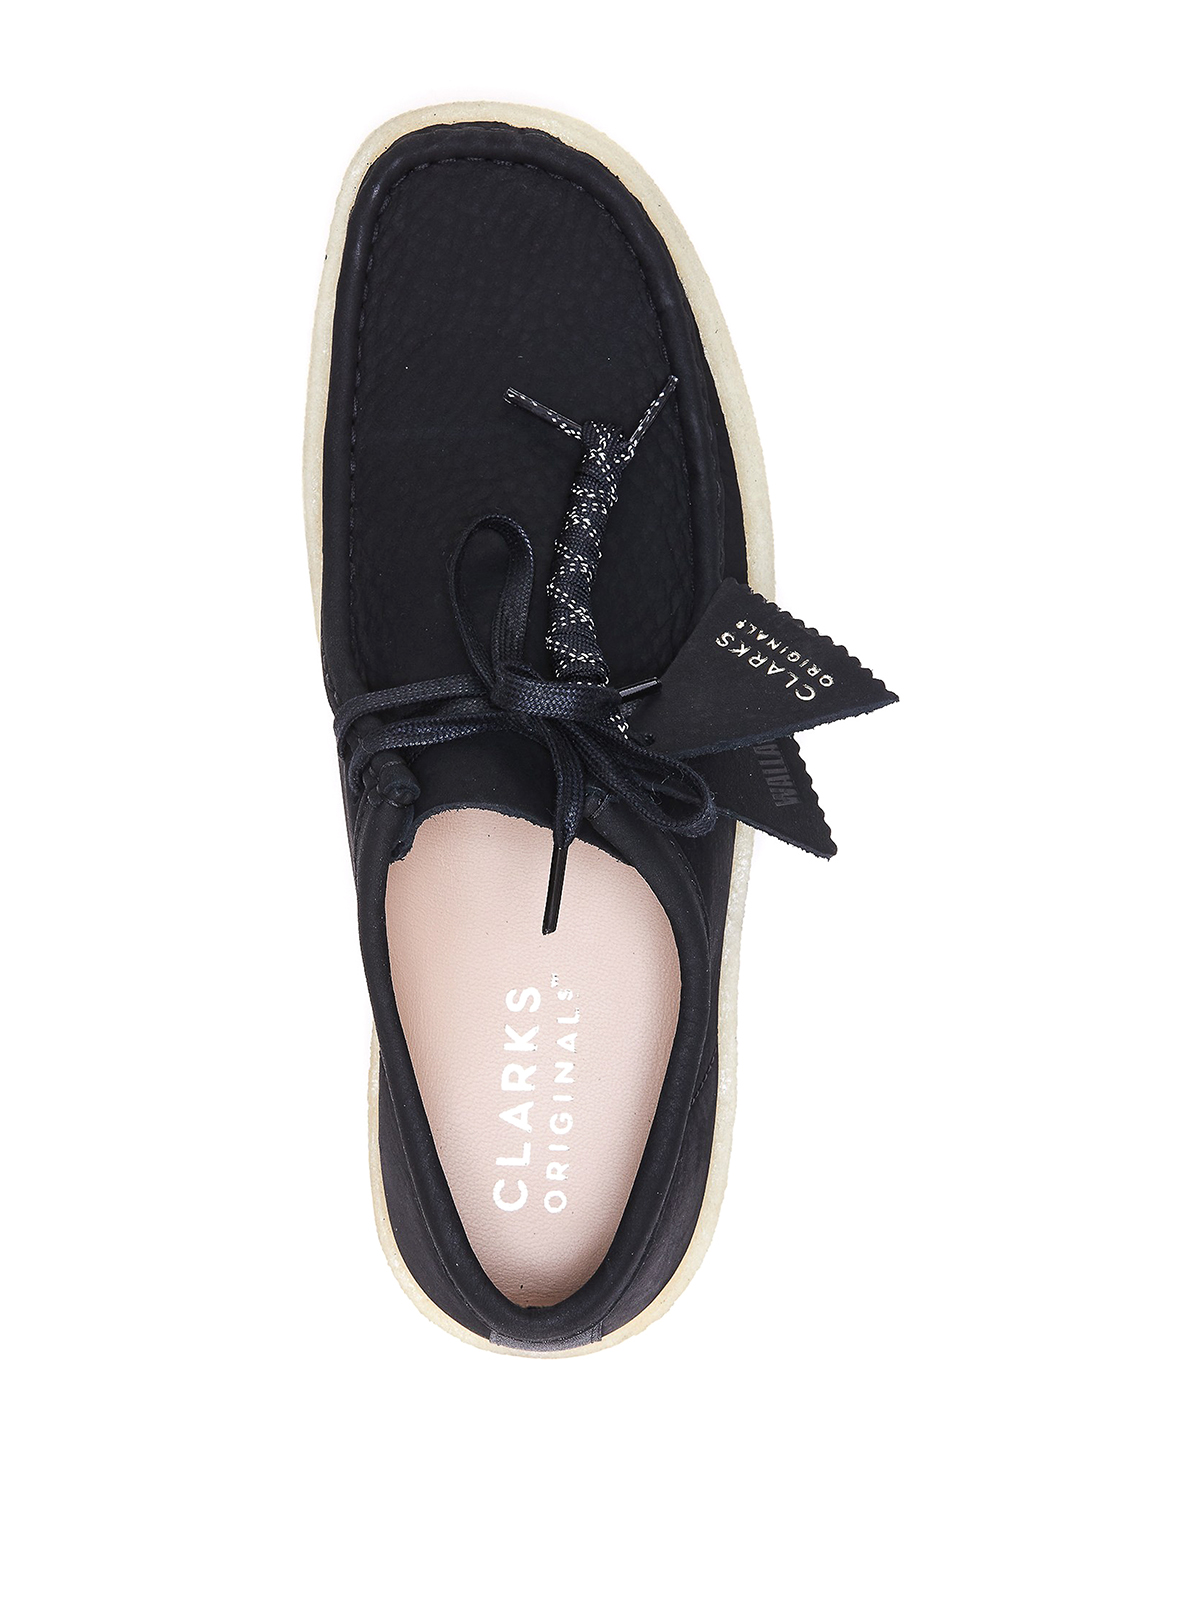 Shop Clarks Zapatos Con Cordones - Wallabee Cup In Black